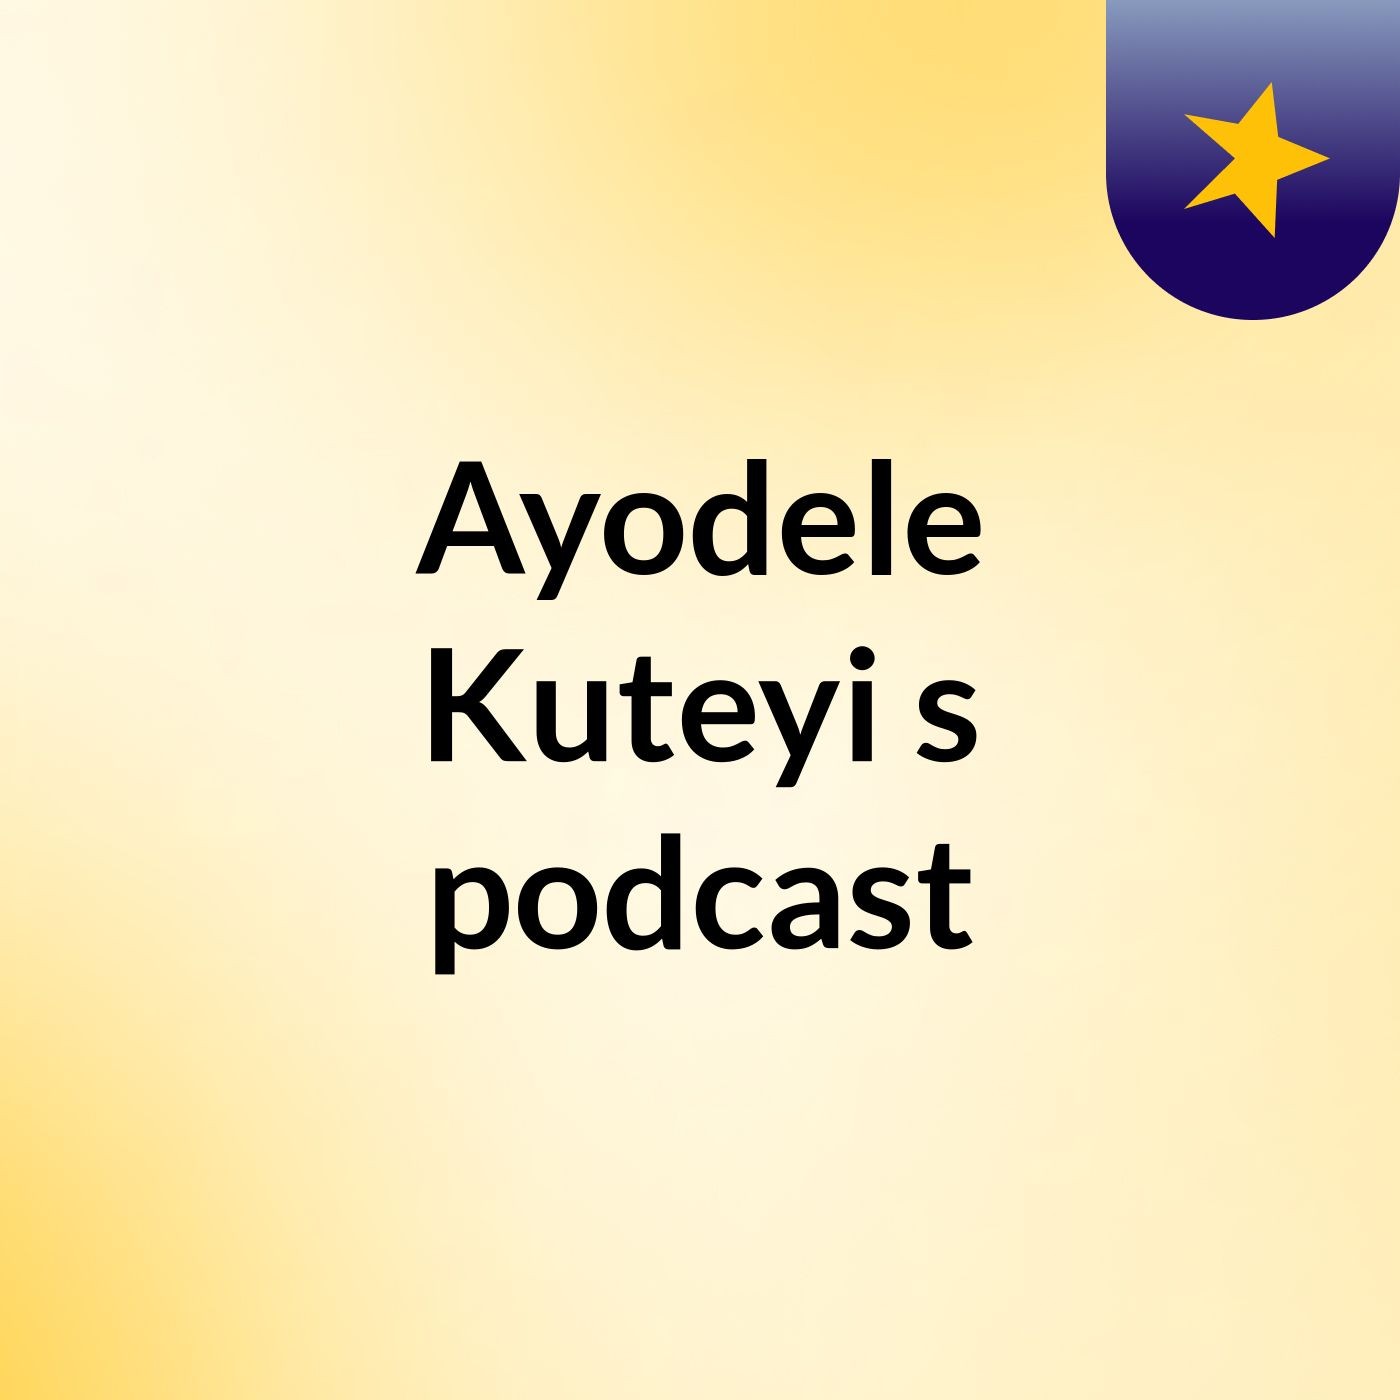 Episode 39 - Ayodele Kuteyi's podcast